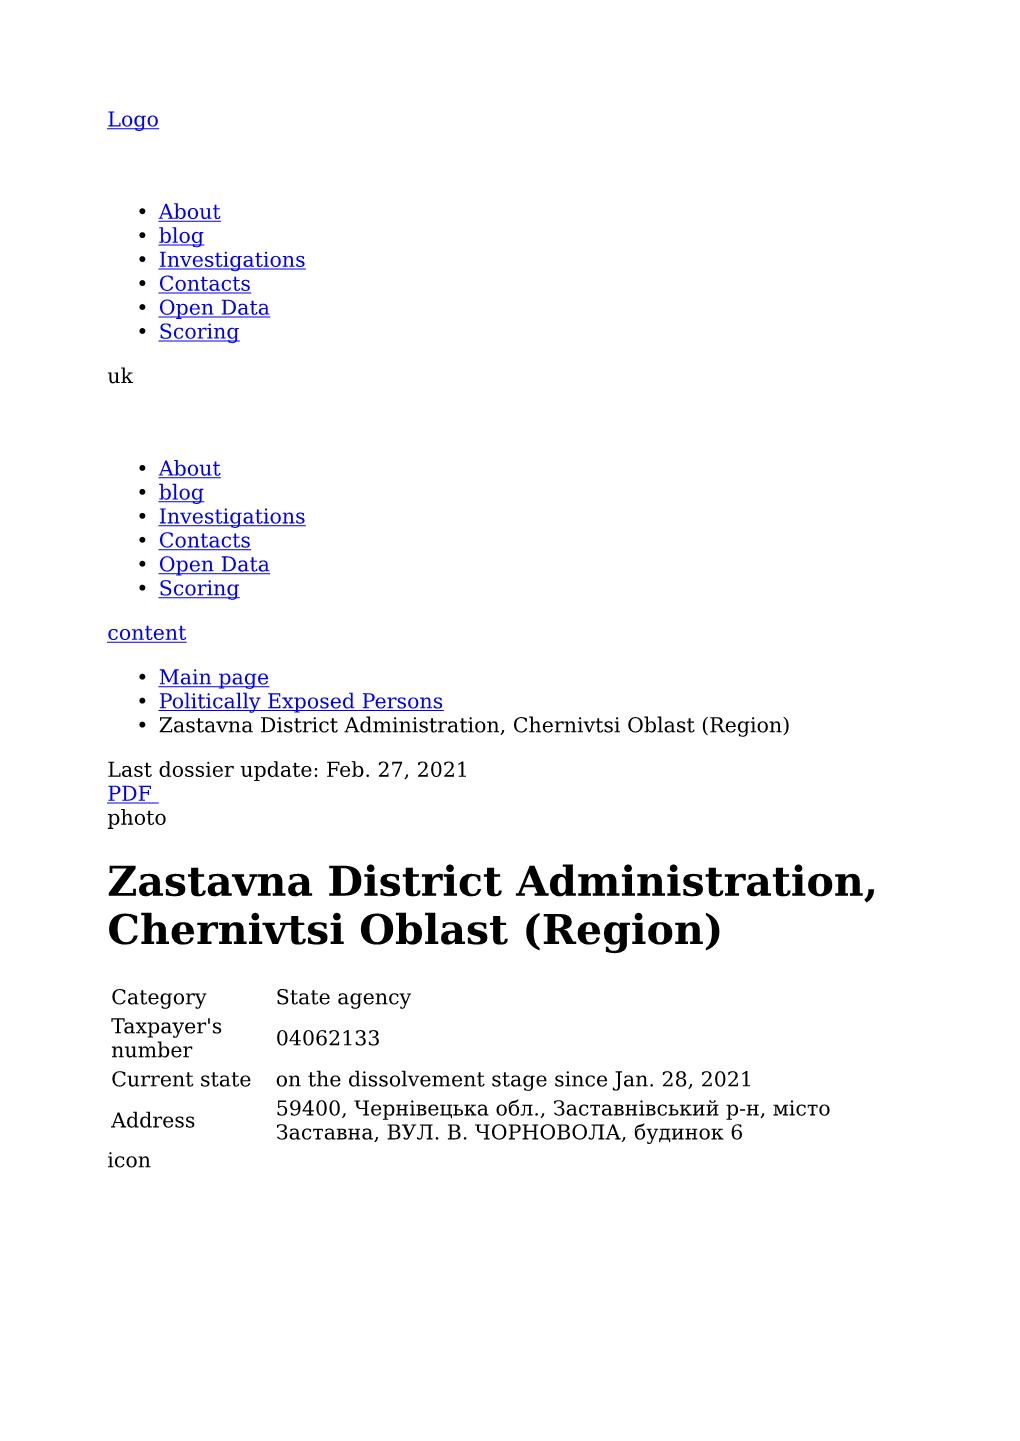 PEP: Zastavna District Administration, Chernivtsi Oblast (Region)